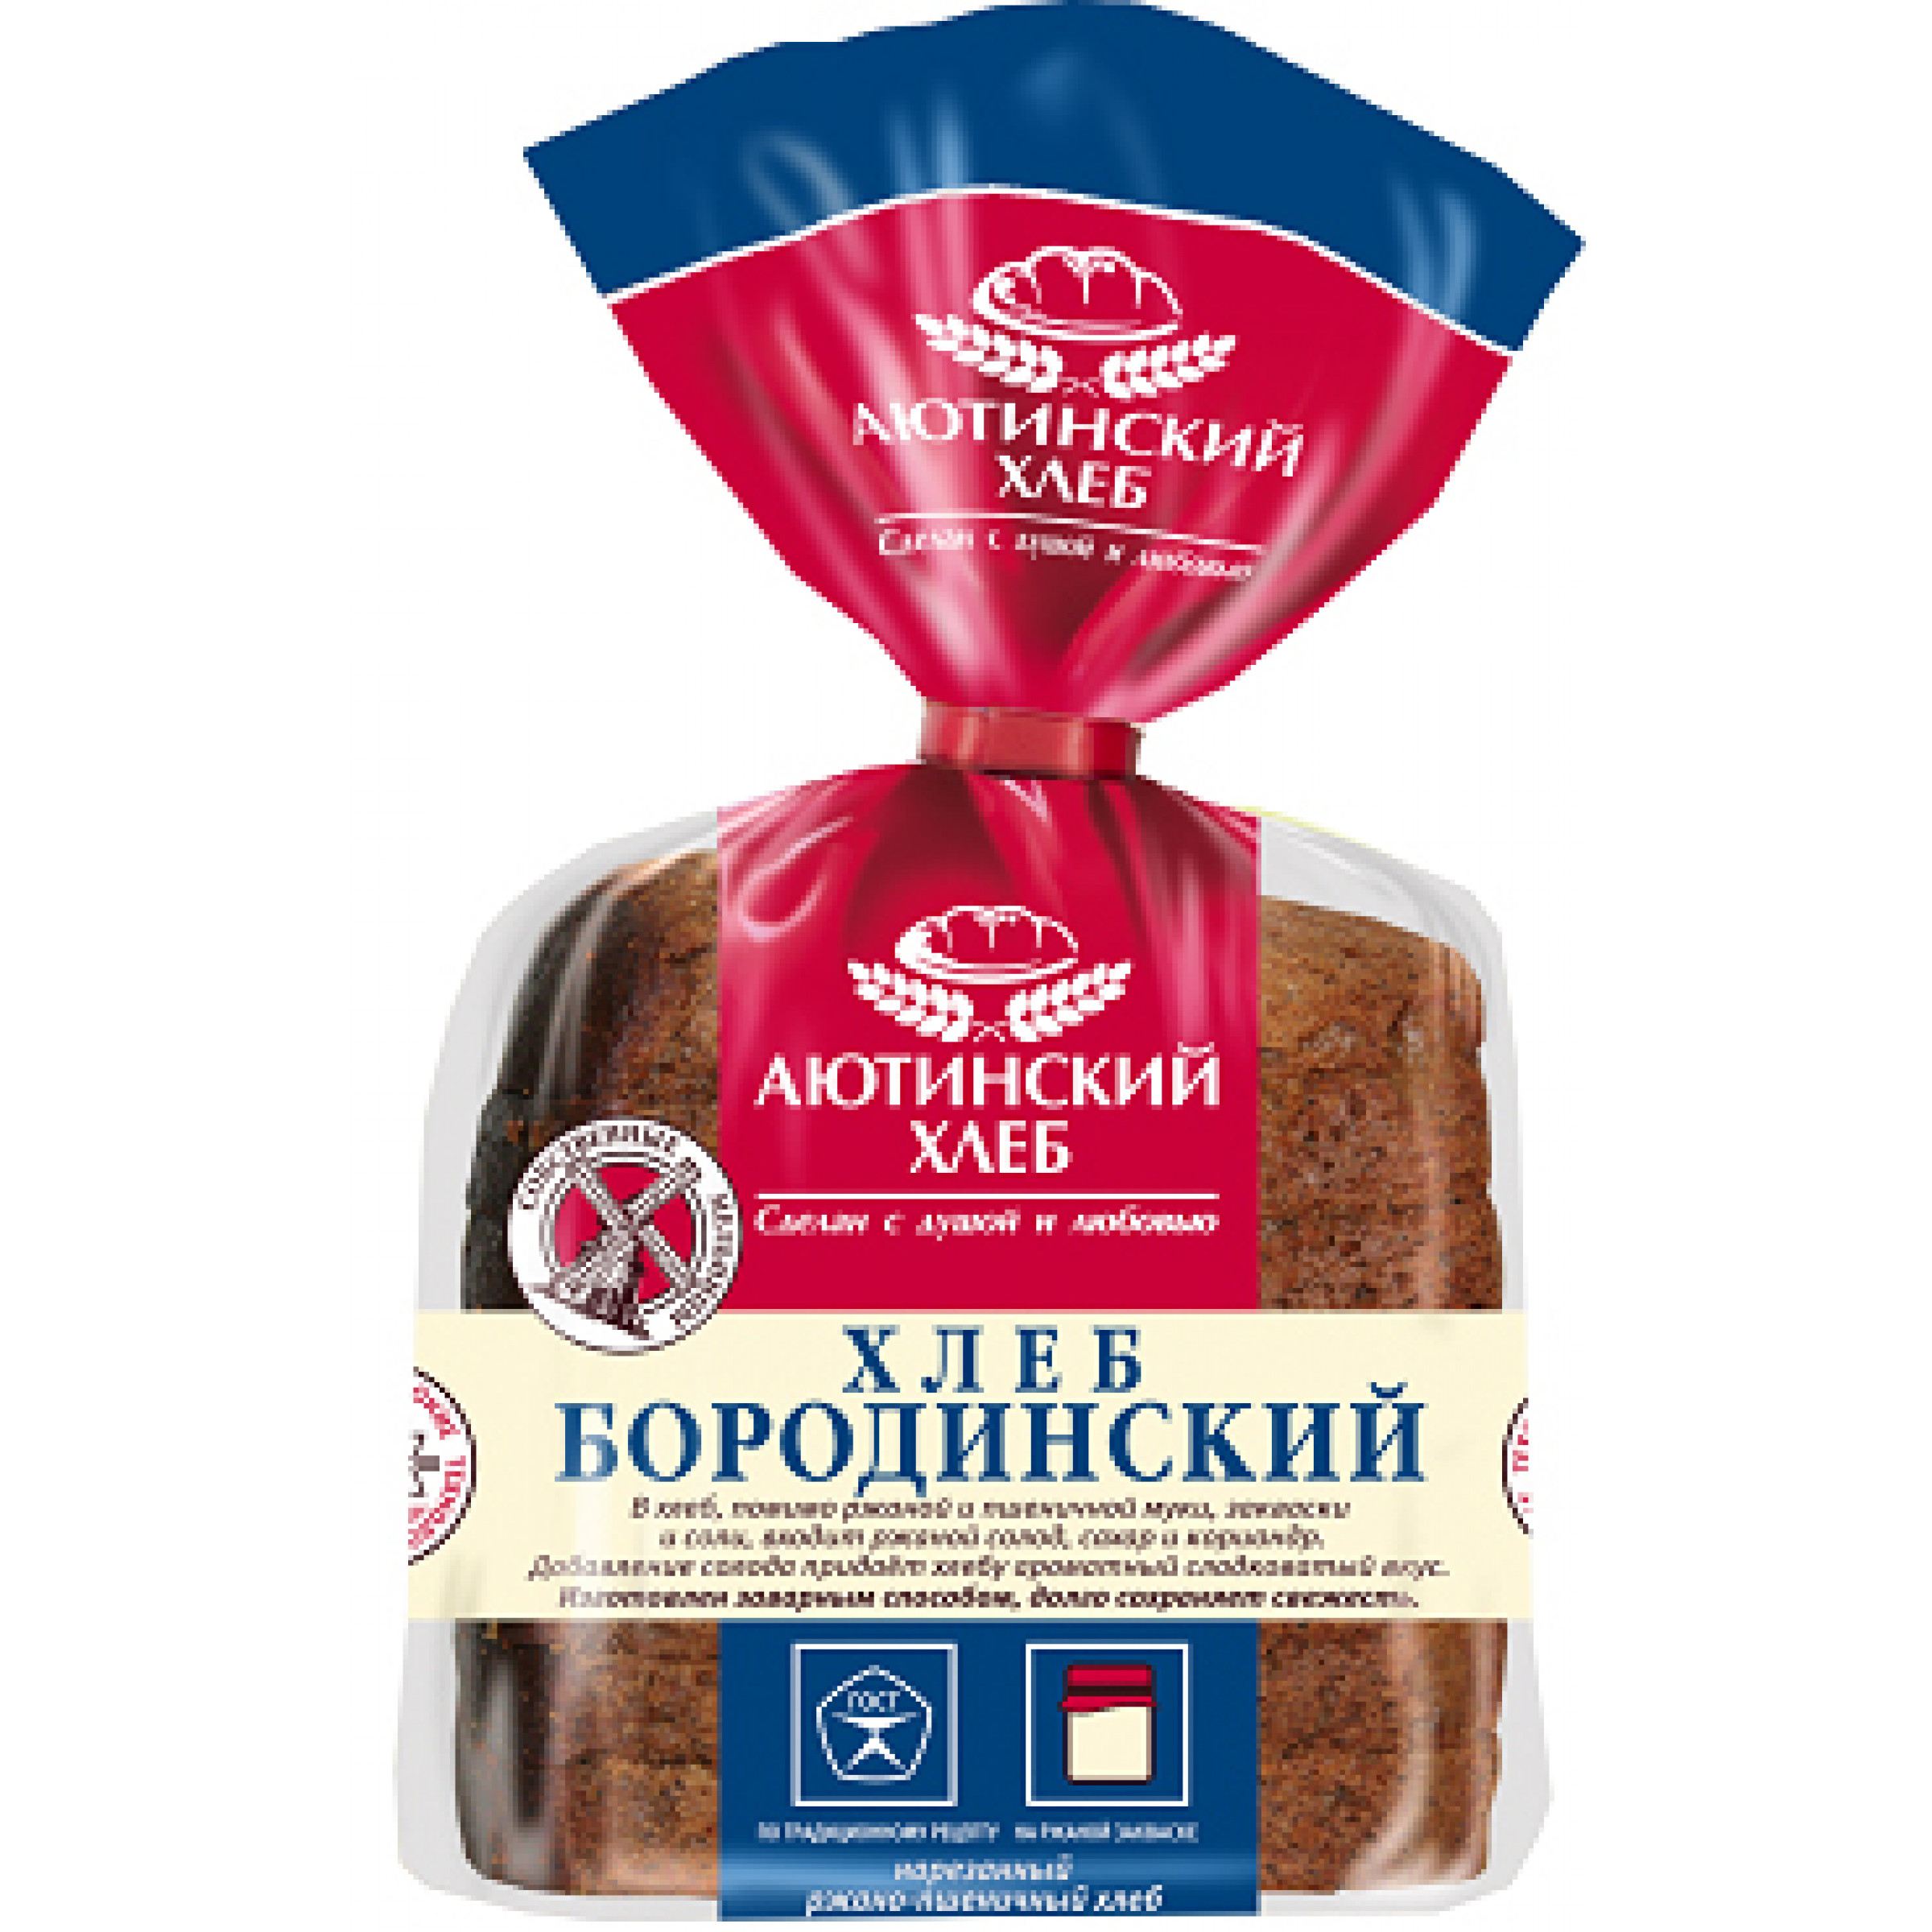 Хлеб Аютинский Бородинский черный ржано-пшеничный нарезанный, 330гр.